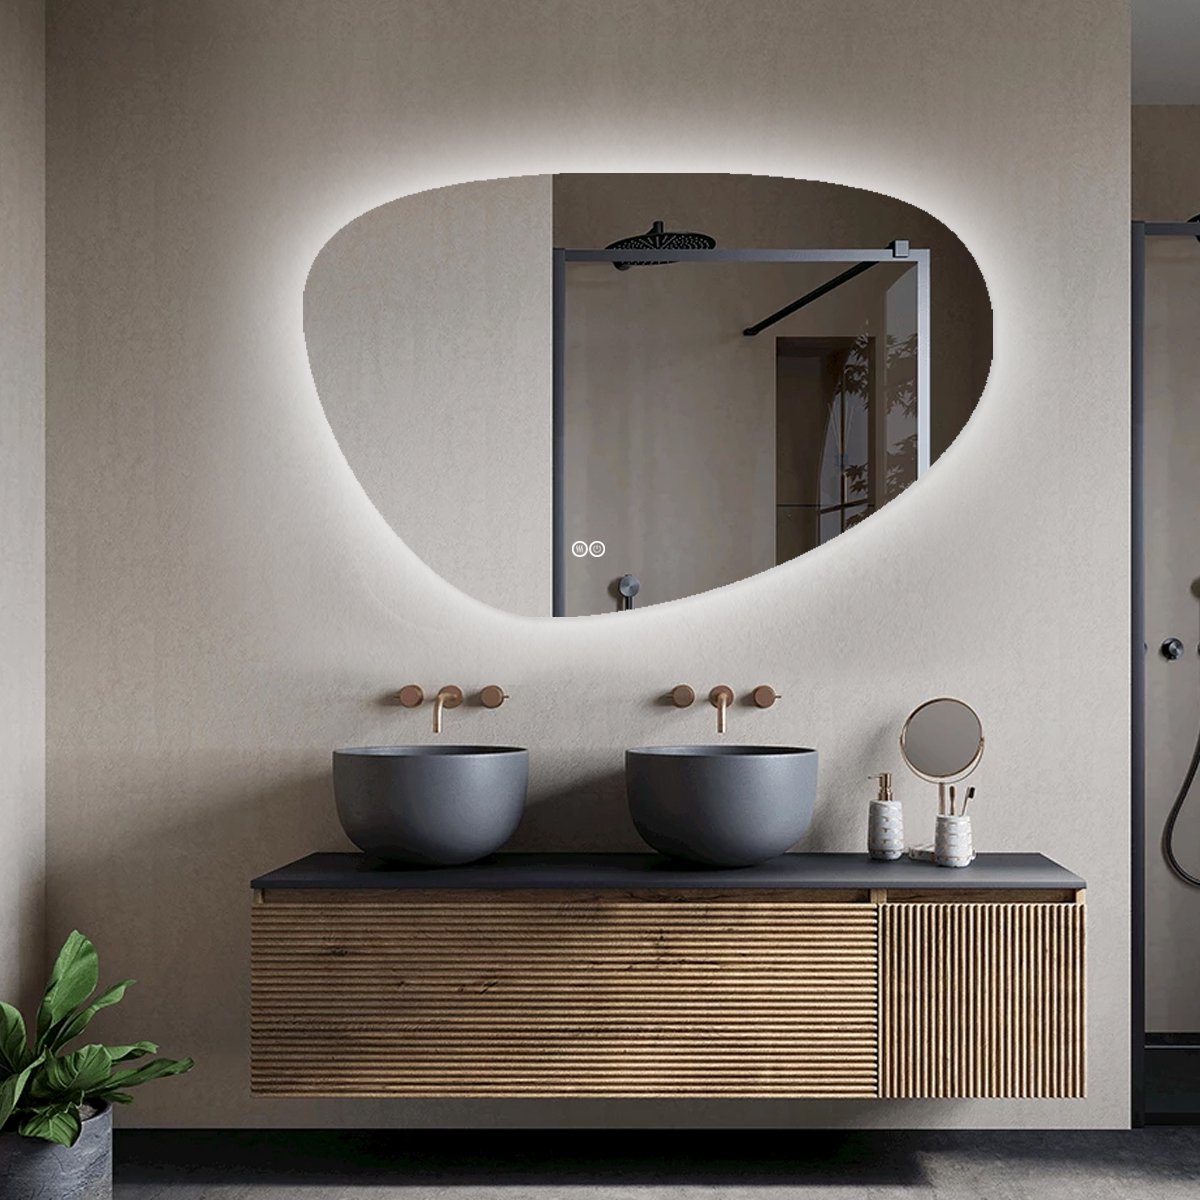 Badkamerspiegel met LED Verlichting - Asymmetrisch - Asymmetrische Badkamerspiegel - Anti Condens Verwarming - 120 cm